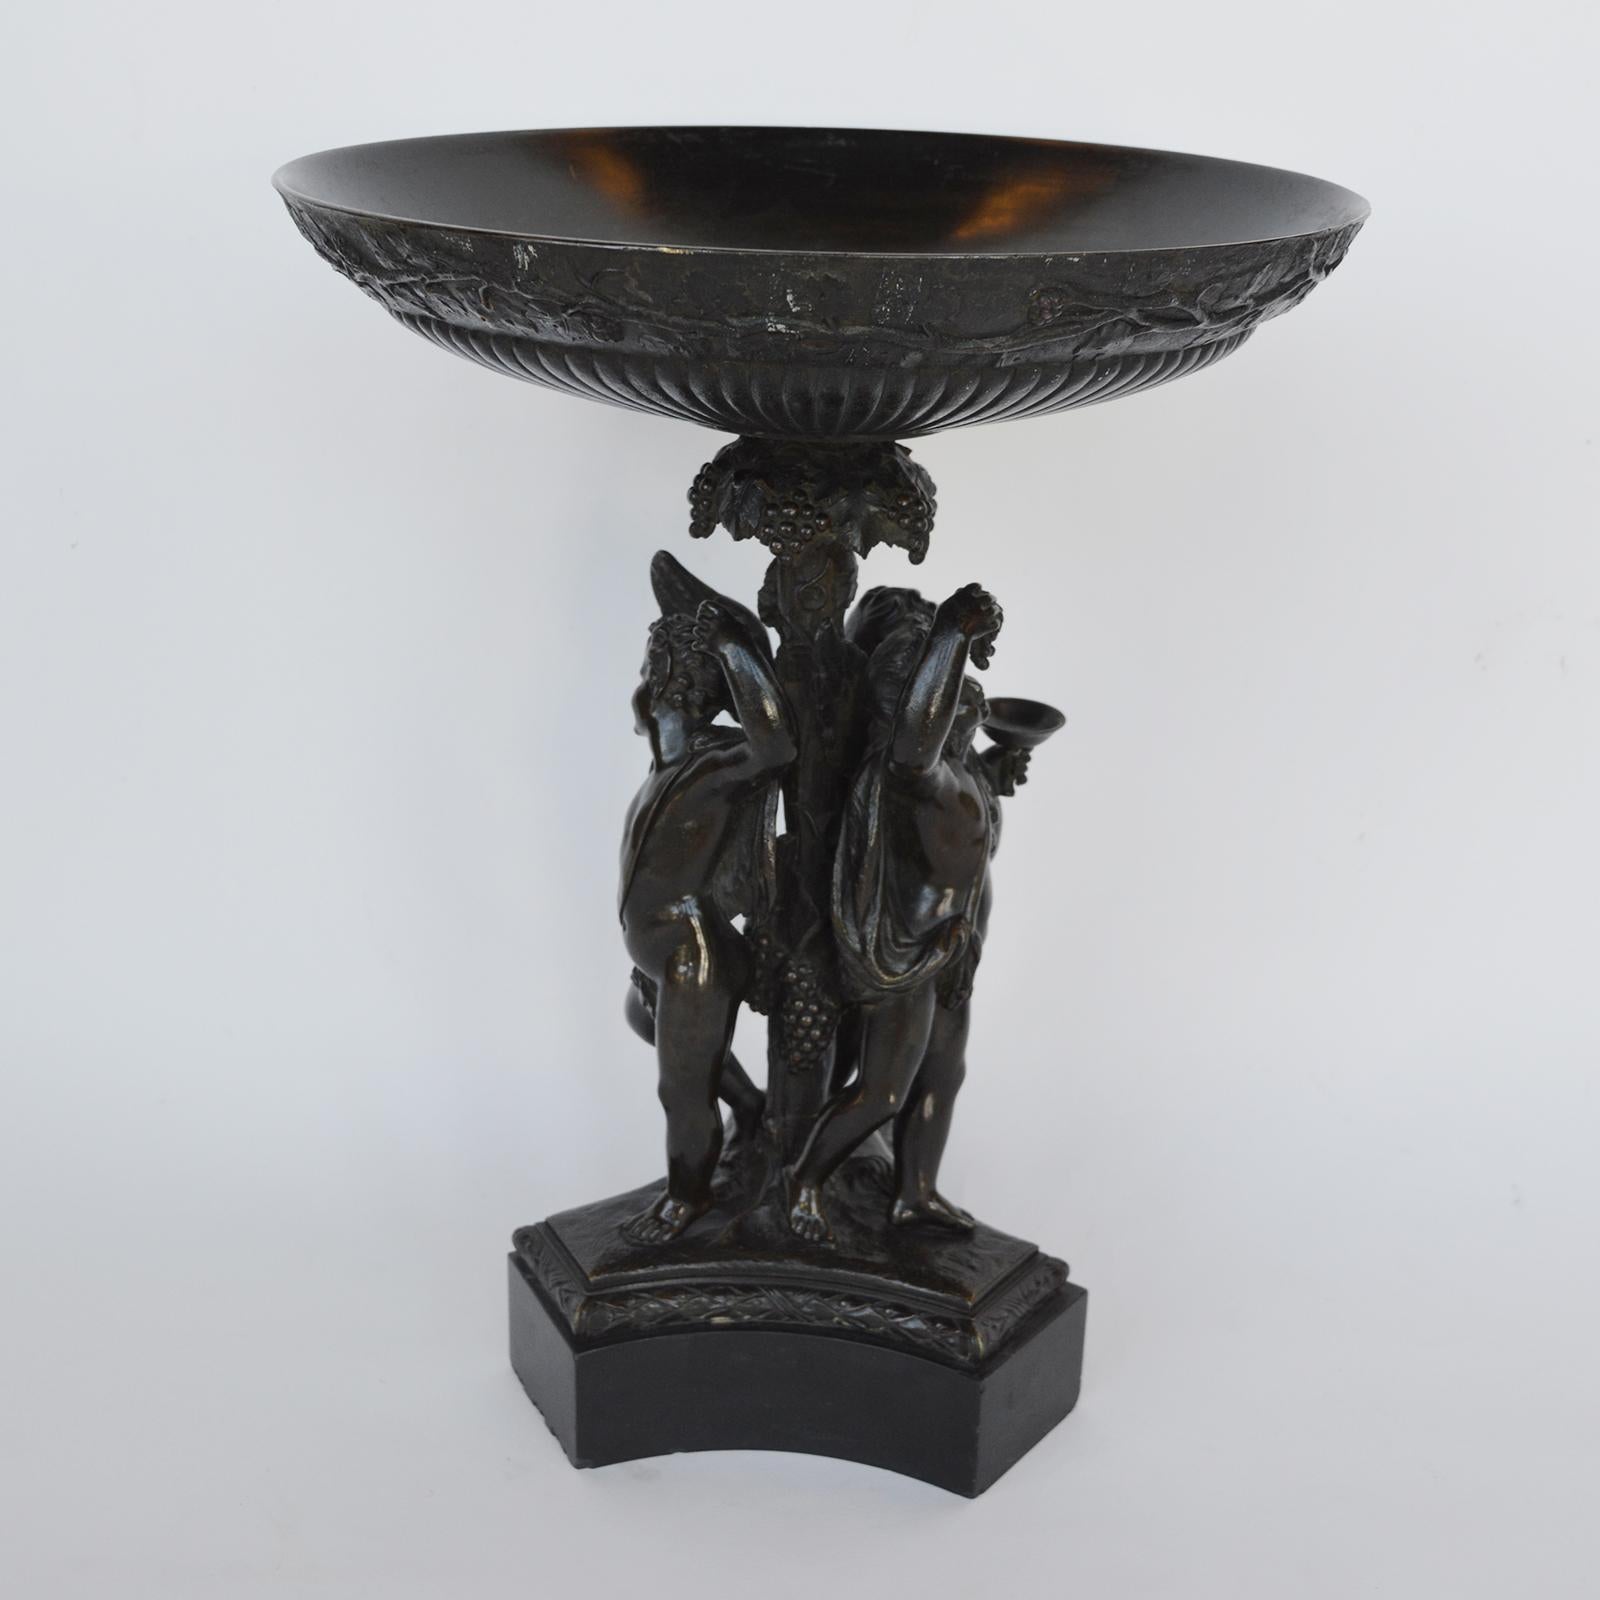 Tazza italien en bronze et en marbre noir représentant une bacchanale, début du 19e siècle.